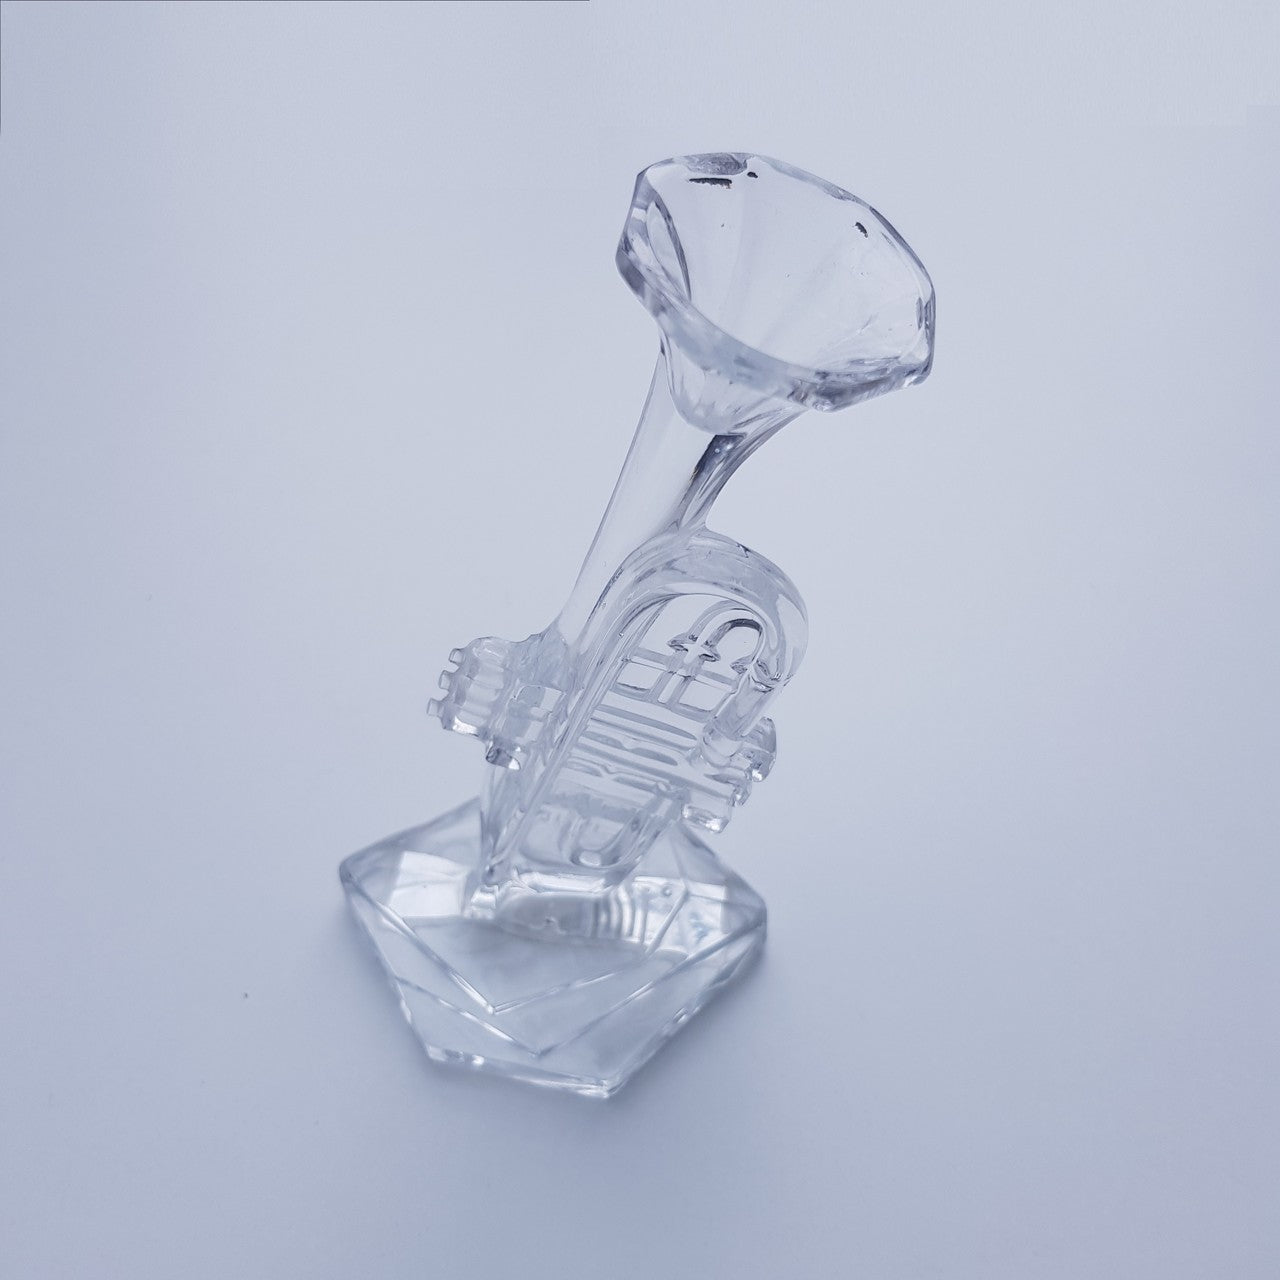 Glasfigur Musikinstrument Kristallglas klar Geschenk Musiker Hobby Sammeln 13cm